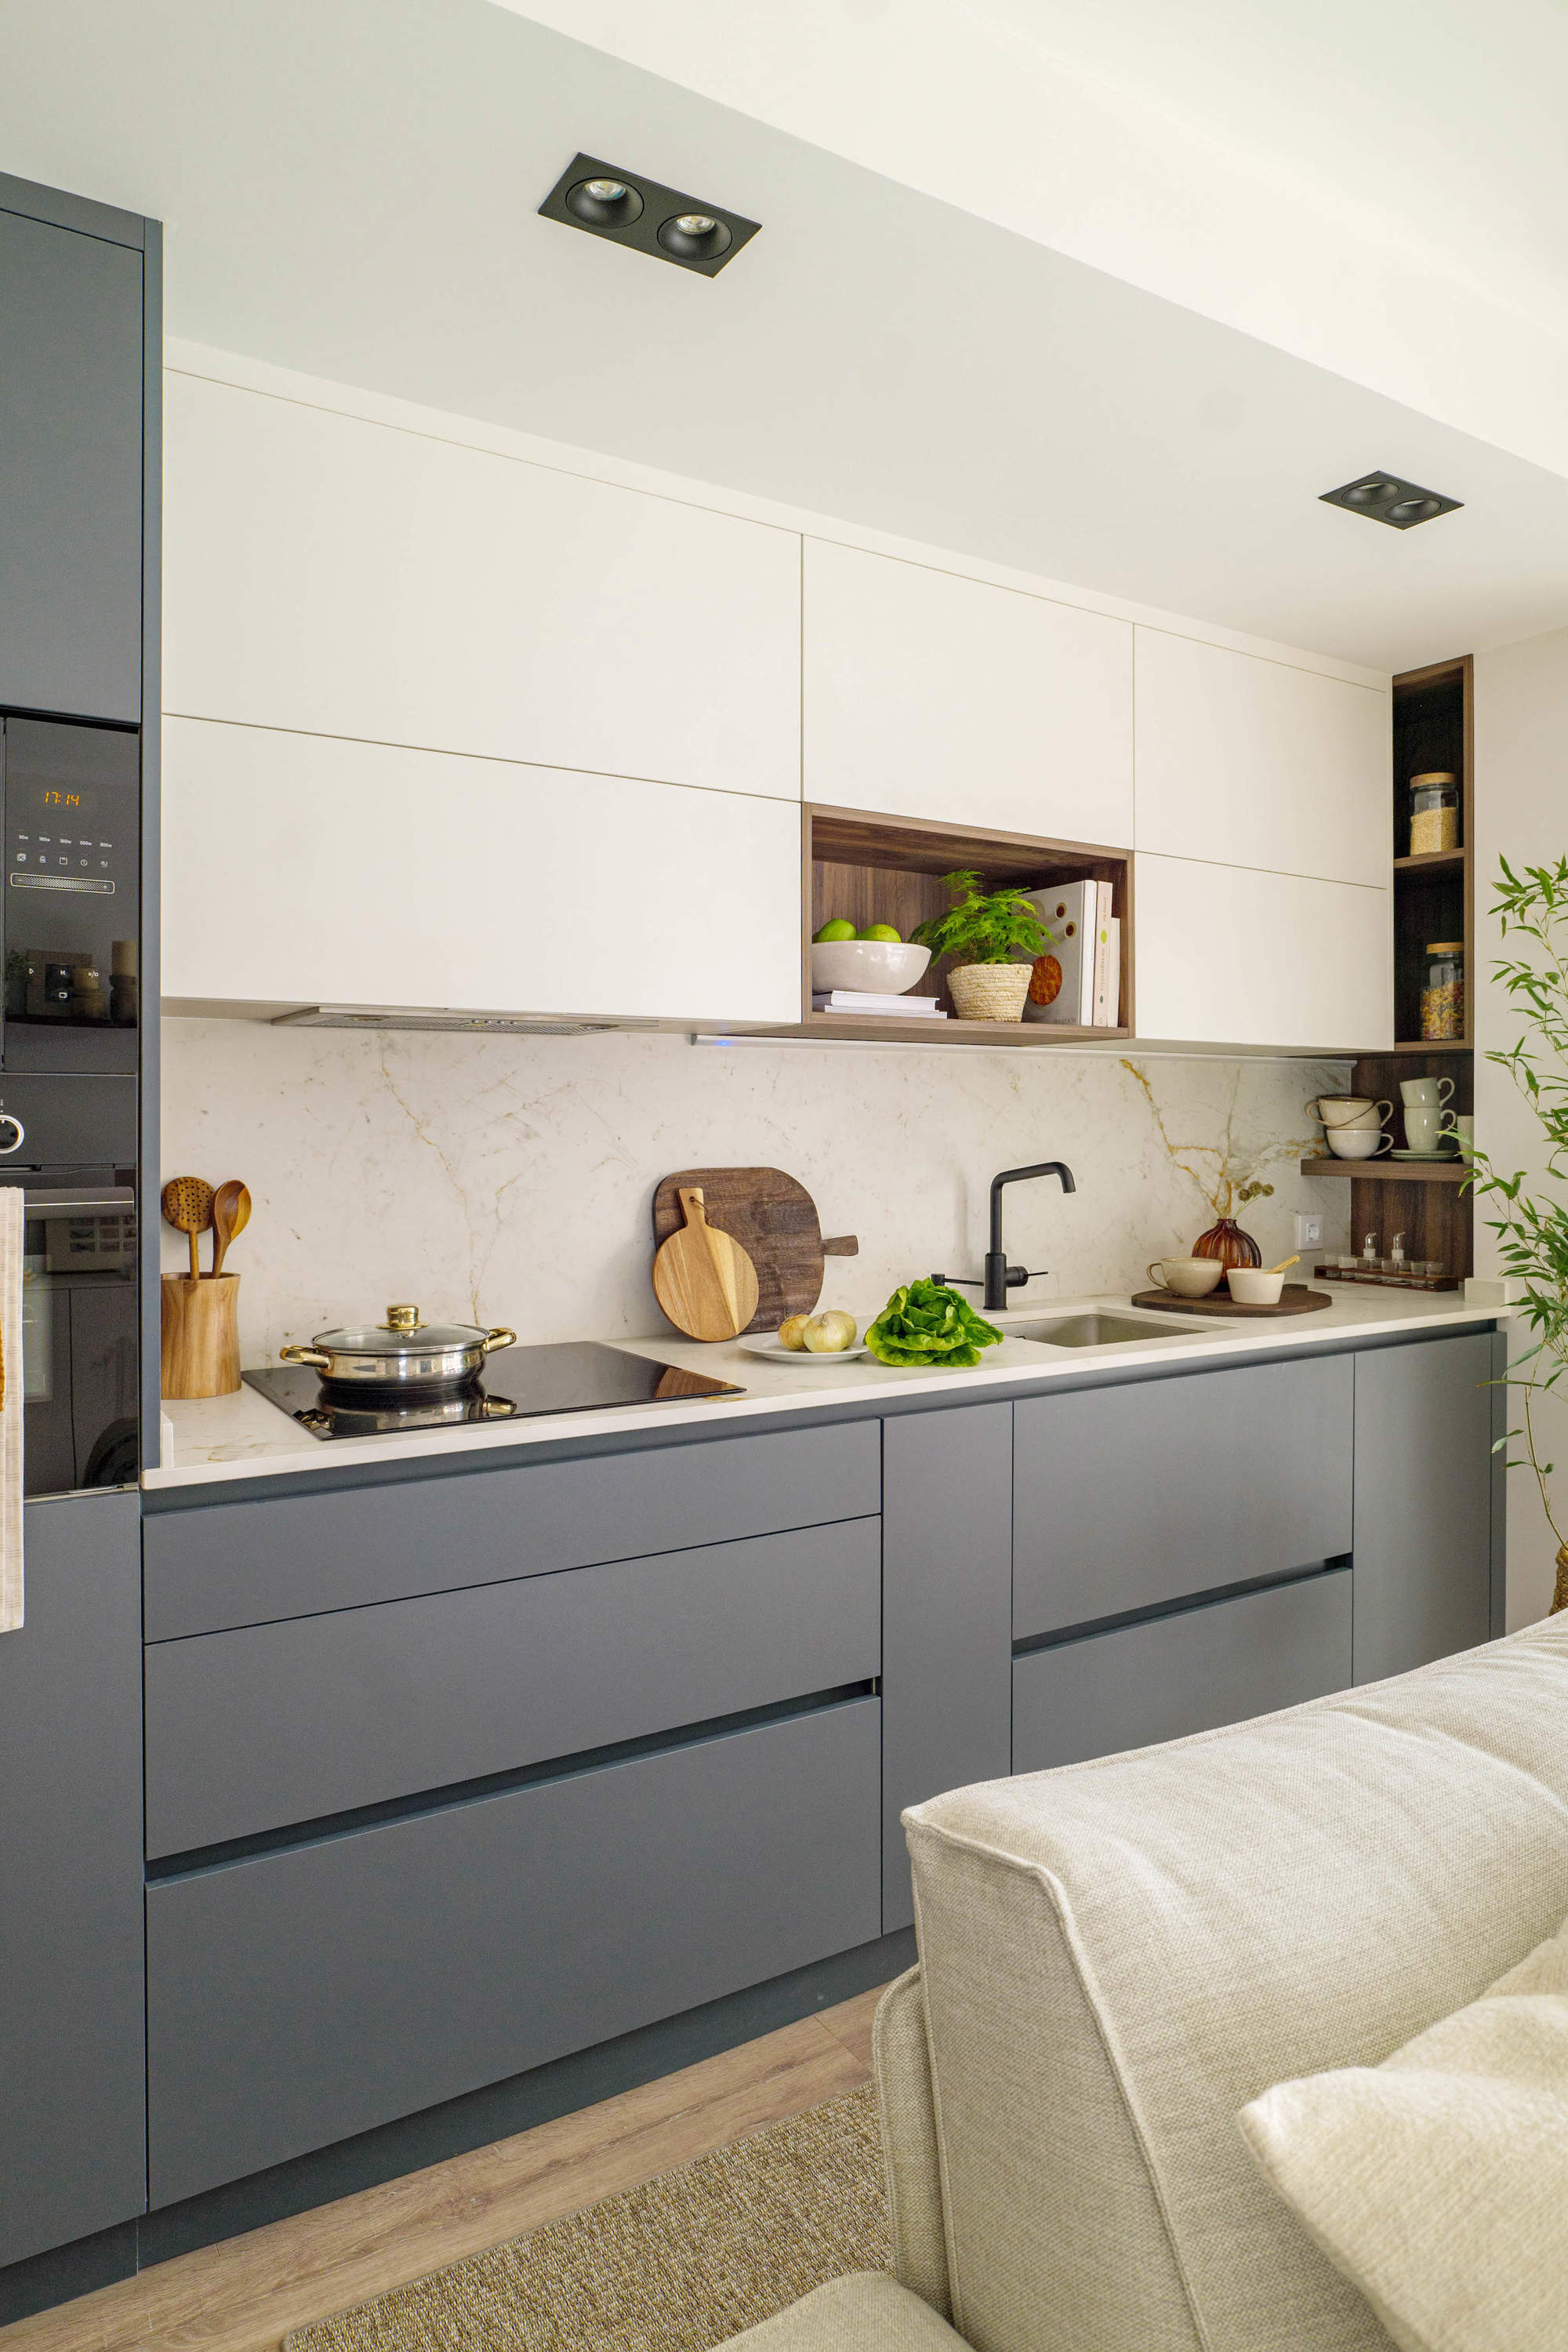 Cocina abierta blanca y gris con suelo de madera y antepecho de marmol por quefalamaria